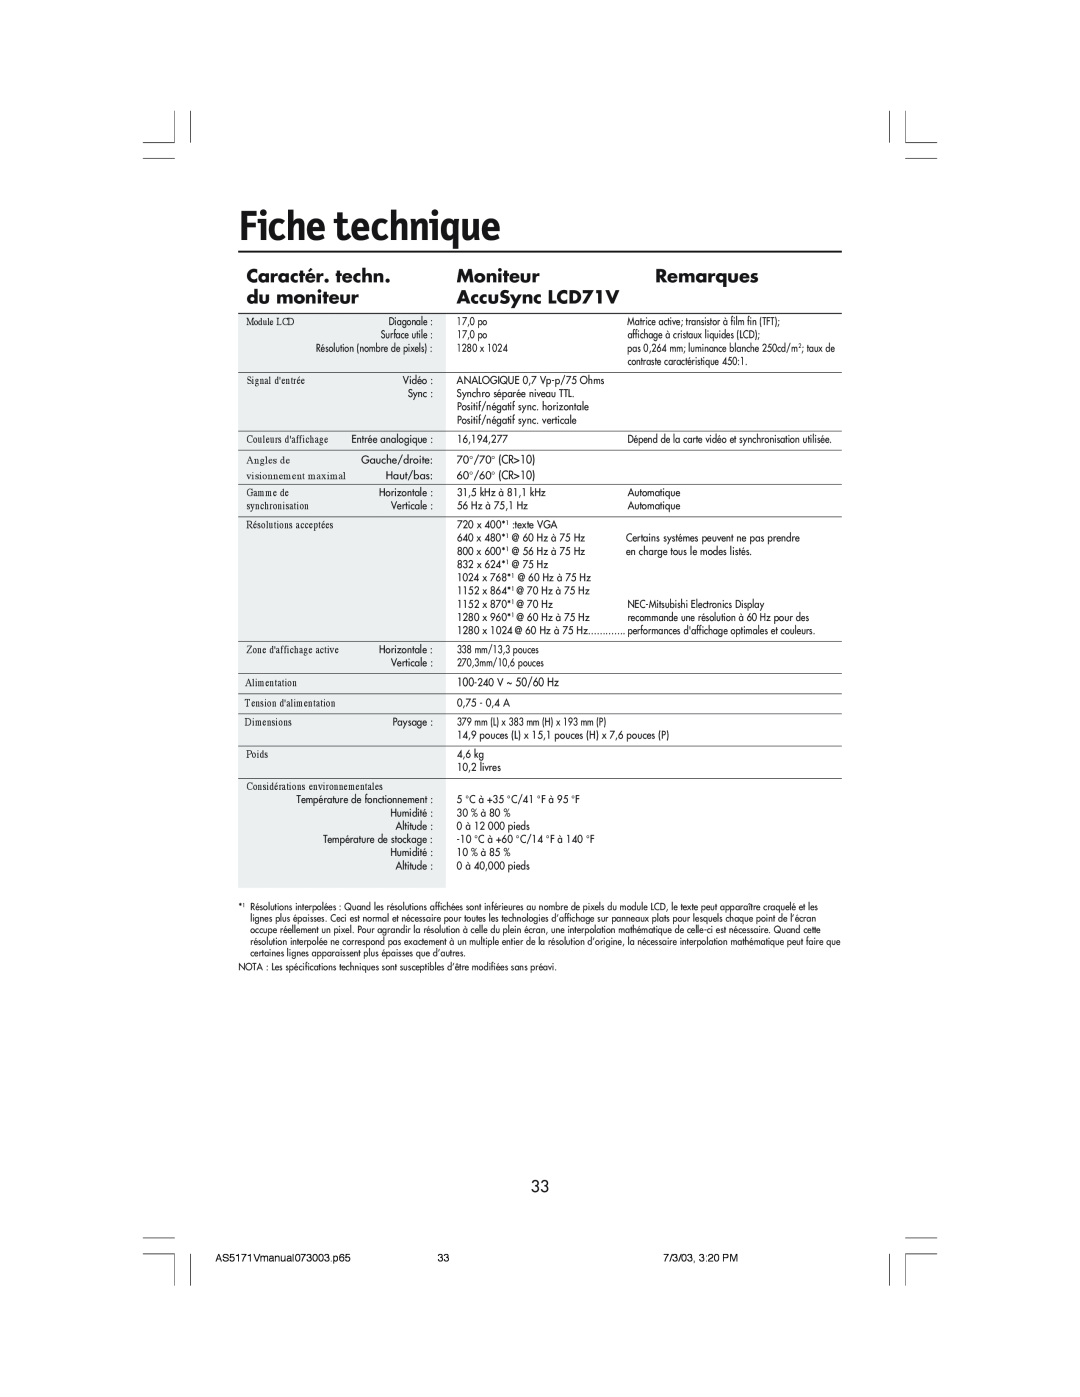 NEC manual Fiche technique, Caractér. techn, Moniteur, Remarques, du moniteur, AccuSync LCD71V 